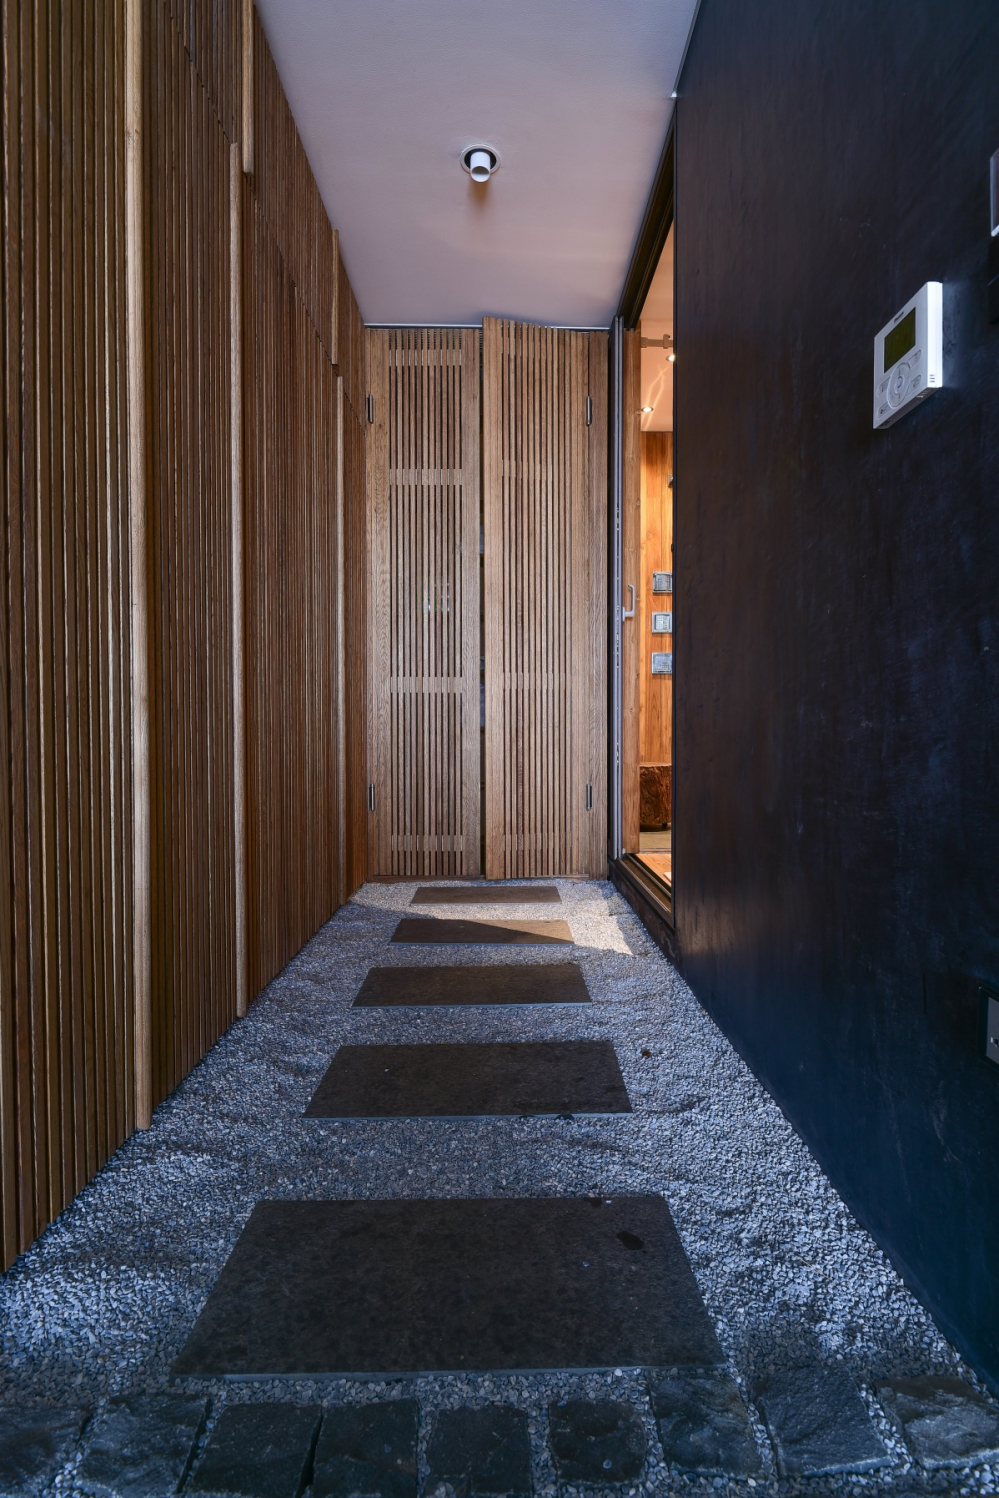 Nhà vệ sinh được đặt cạnh phòng ngủ. Kiến trúc sư rất chú ý trong việc sử dụng vật liệu chuyển tiếp: các viên đá tự nhiên kết hợp với gỗ, mang lại cho nội thất một cảm giác ấm cúng theo phong cách tối giản. 